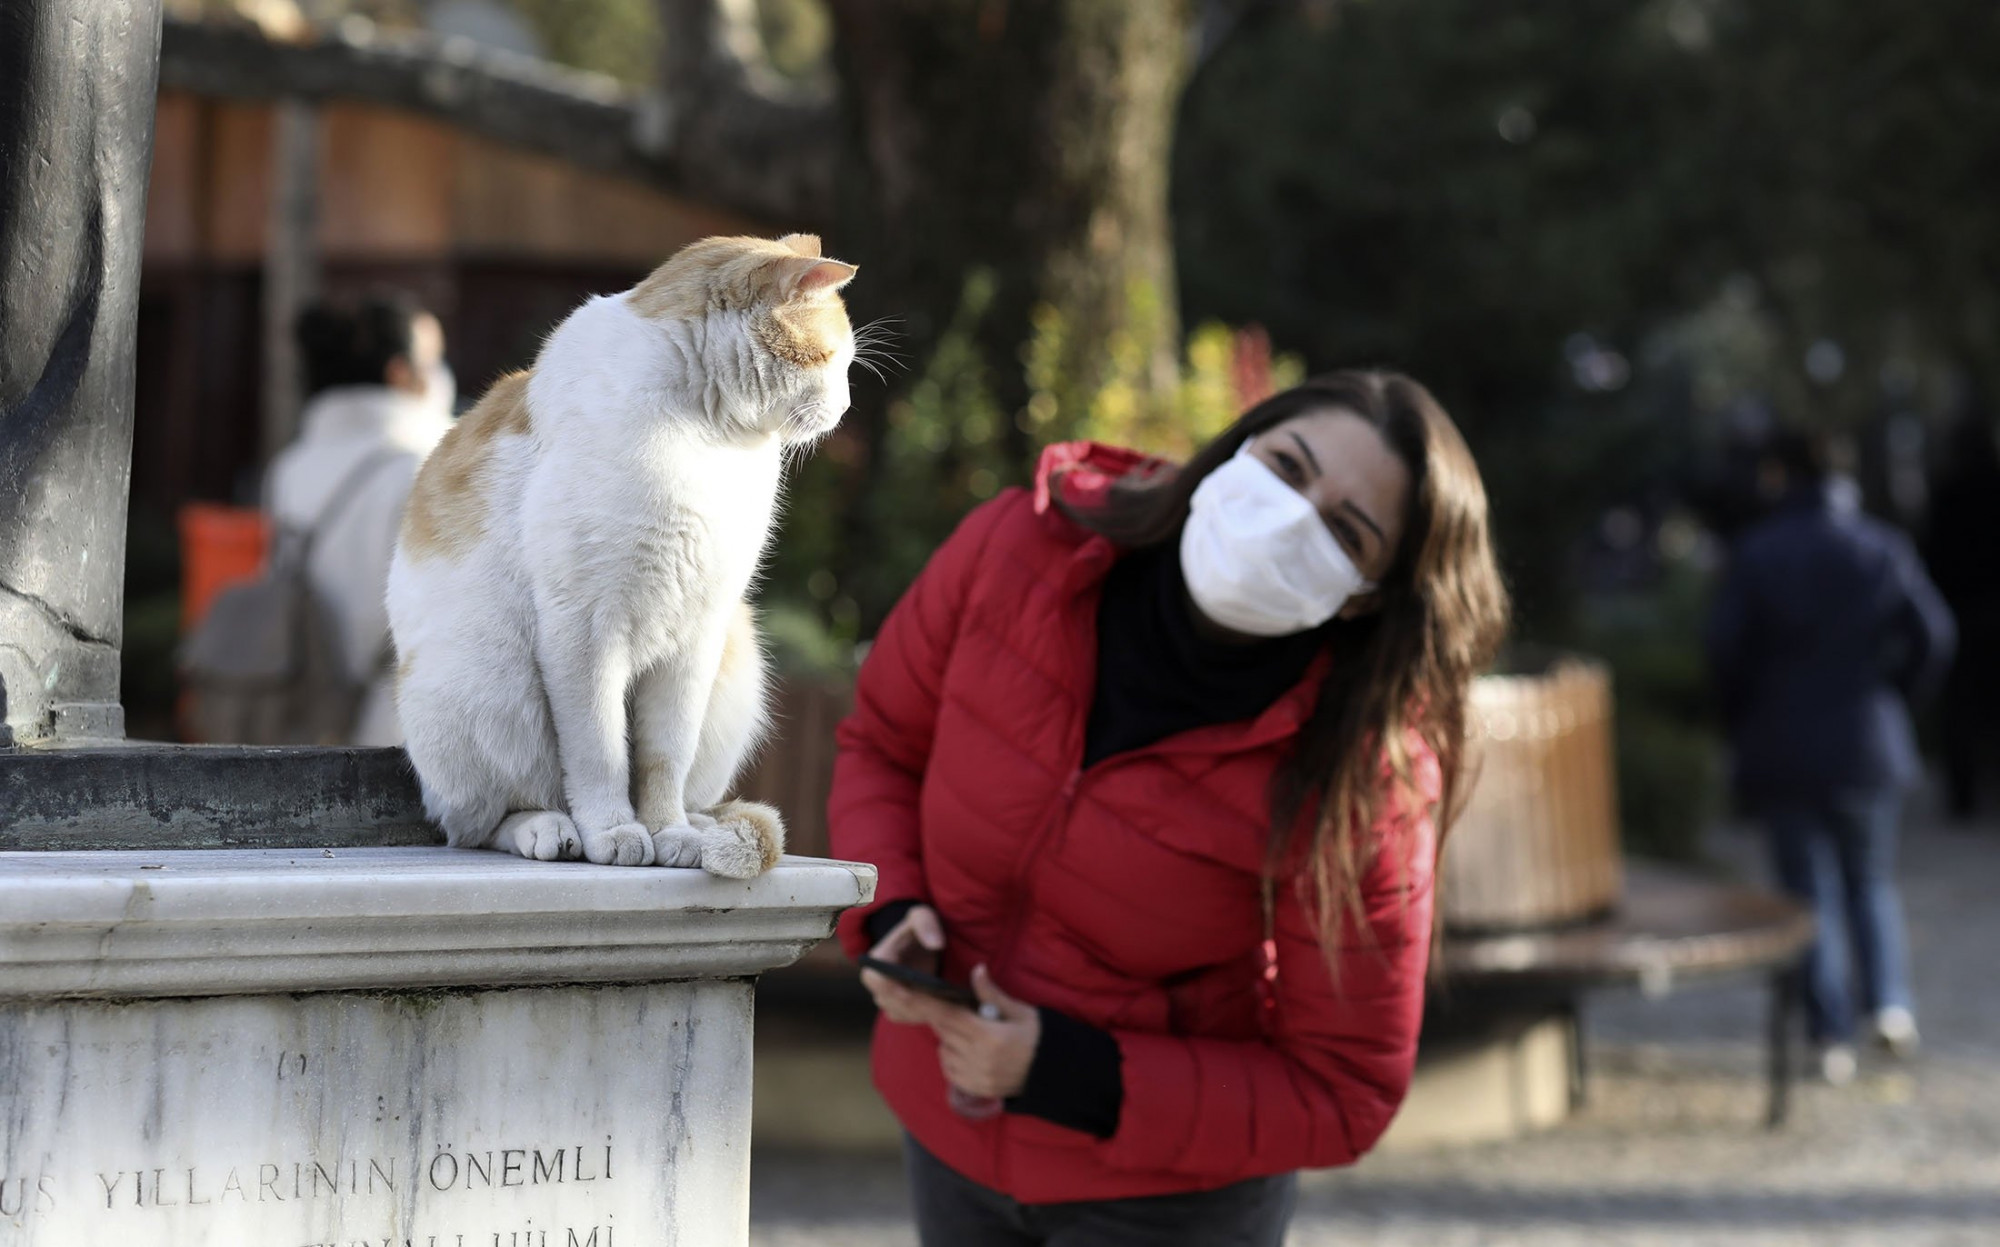 Một người phụ nữ đang tìm cách làm quen với một chú mèo bắt gặp trên đường 